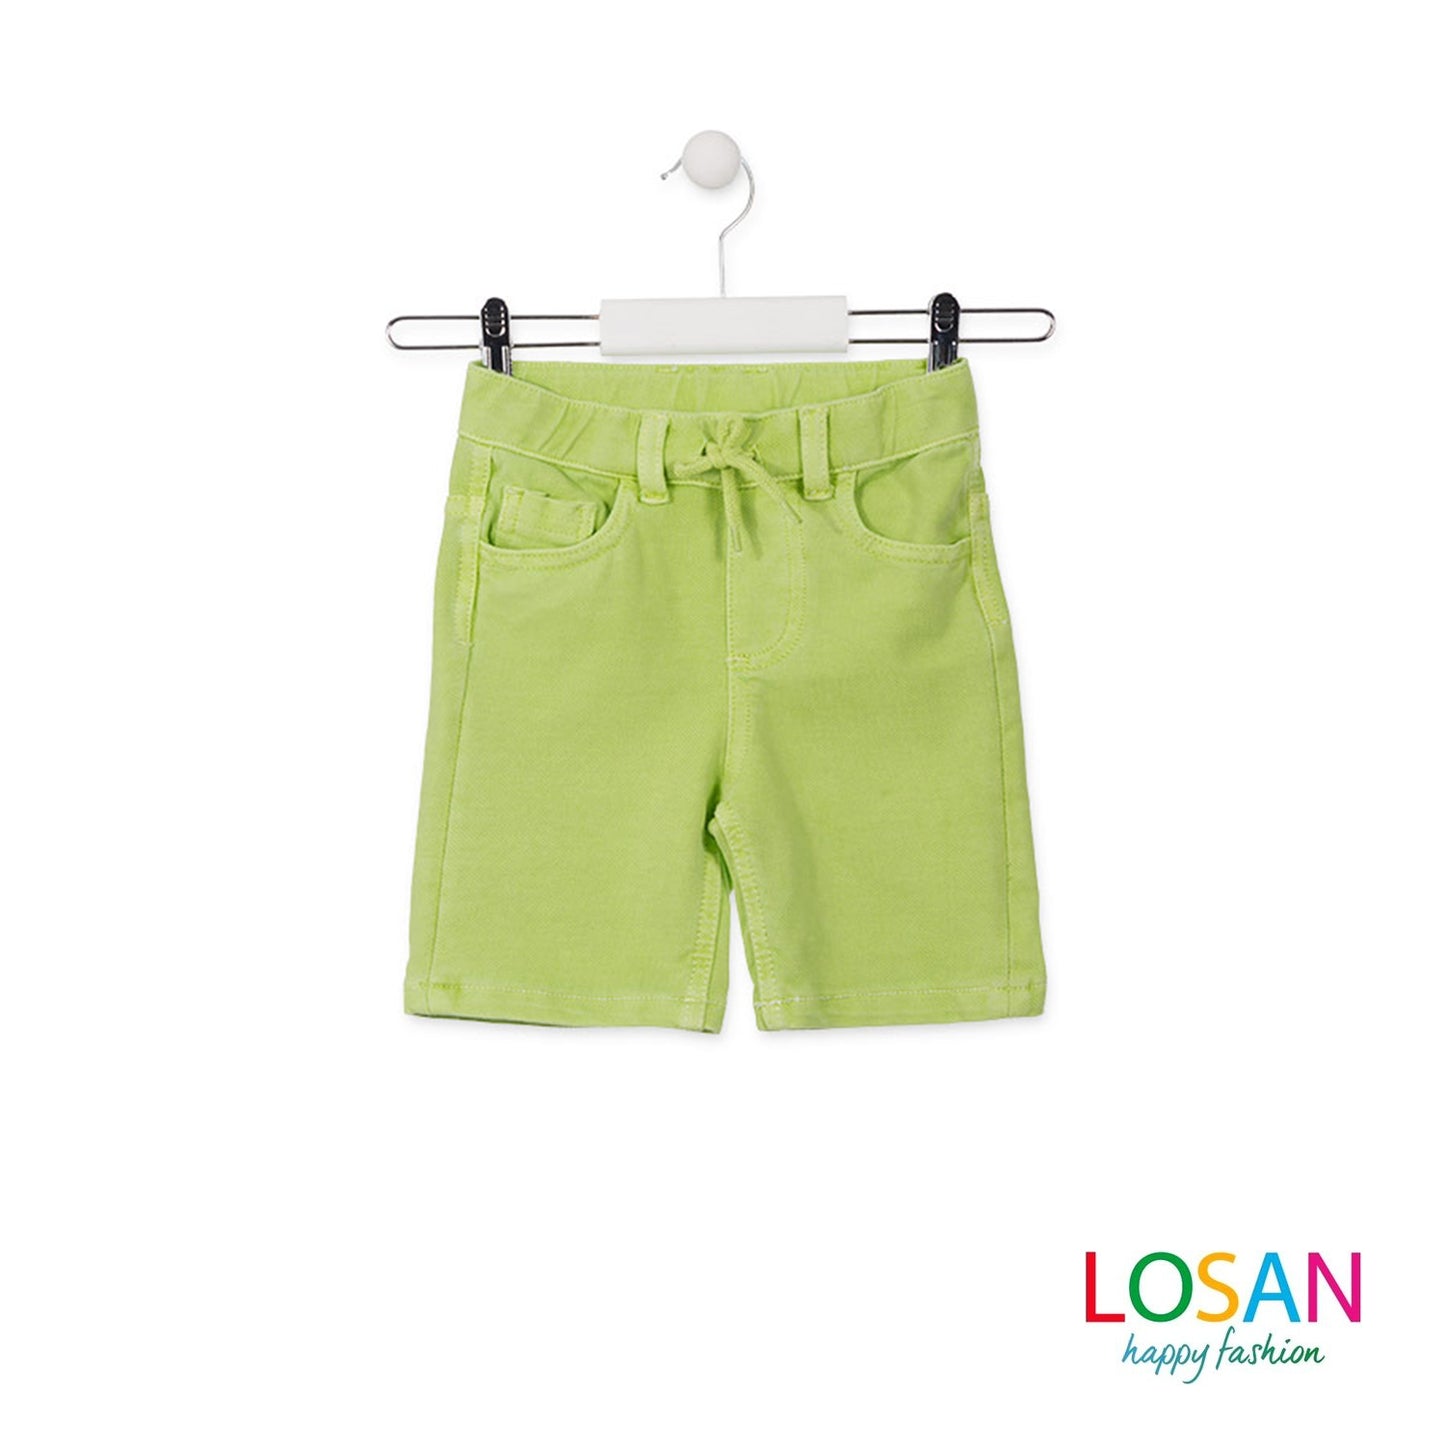 Losan - Bermuda verdi effetto jeans Junior